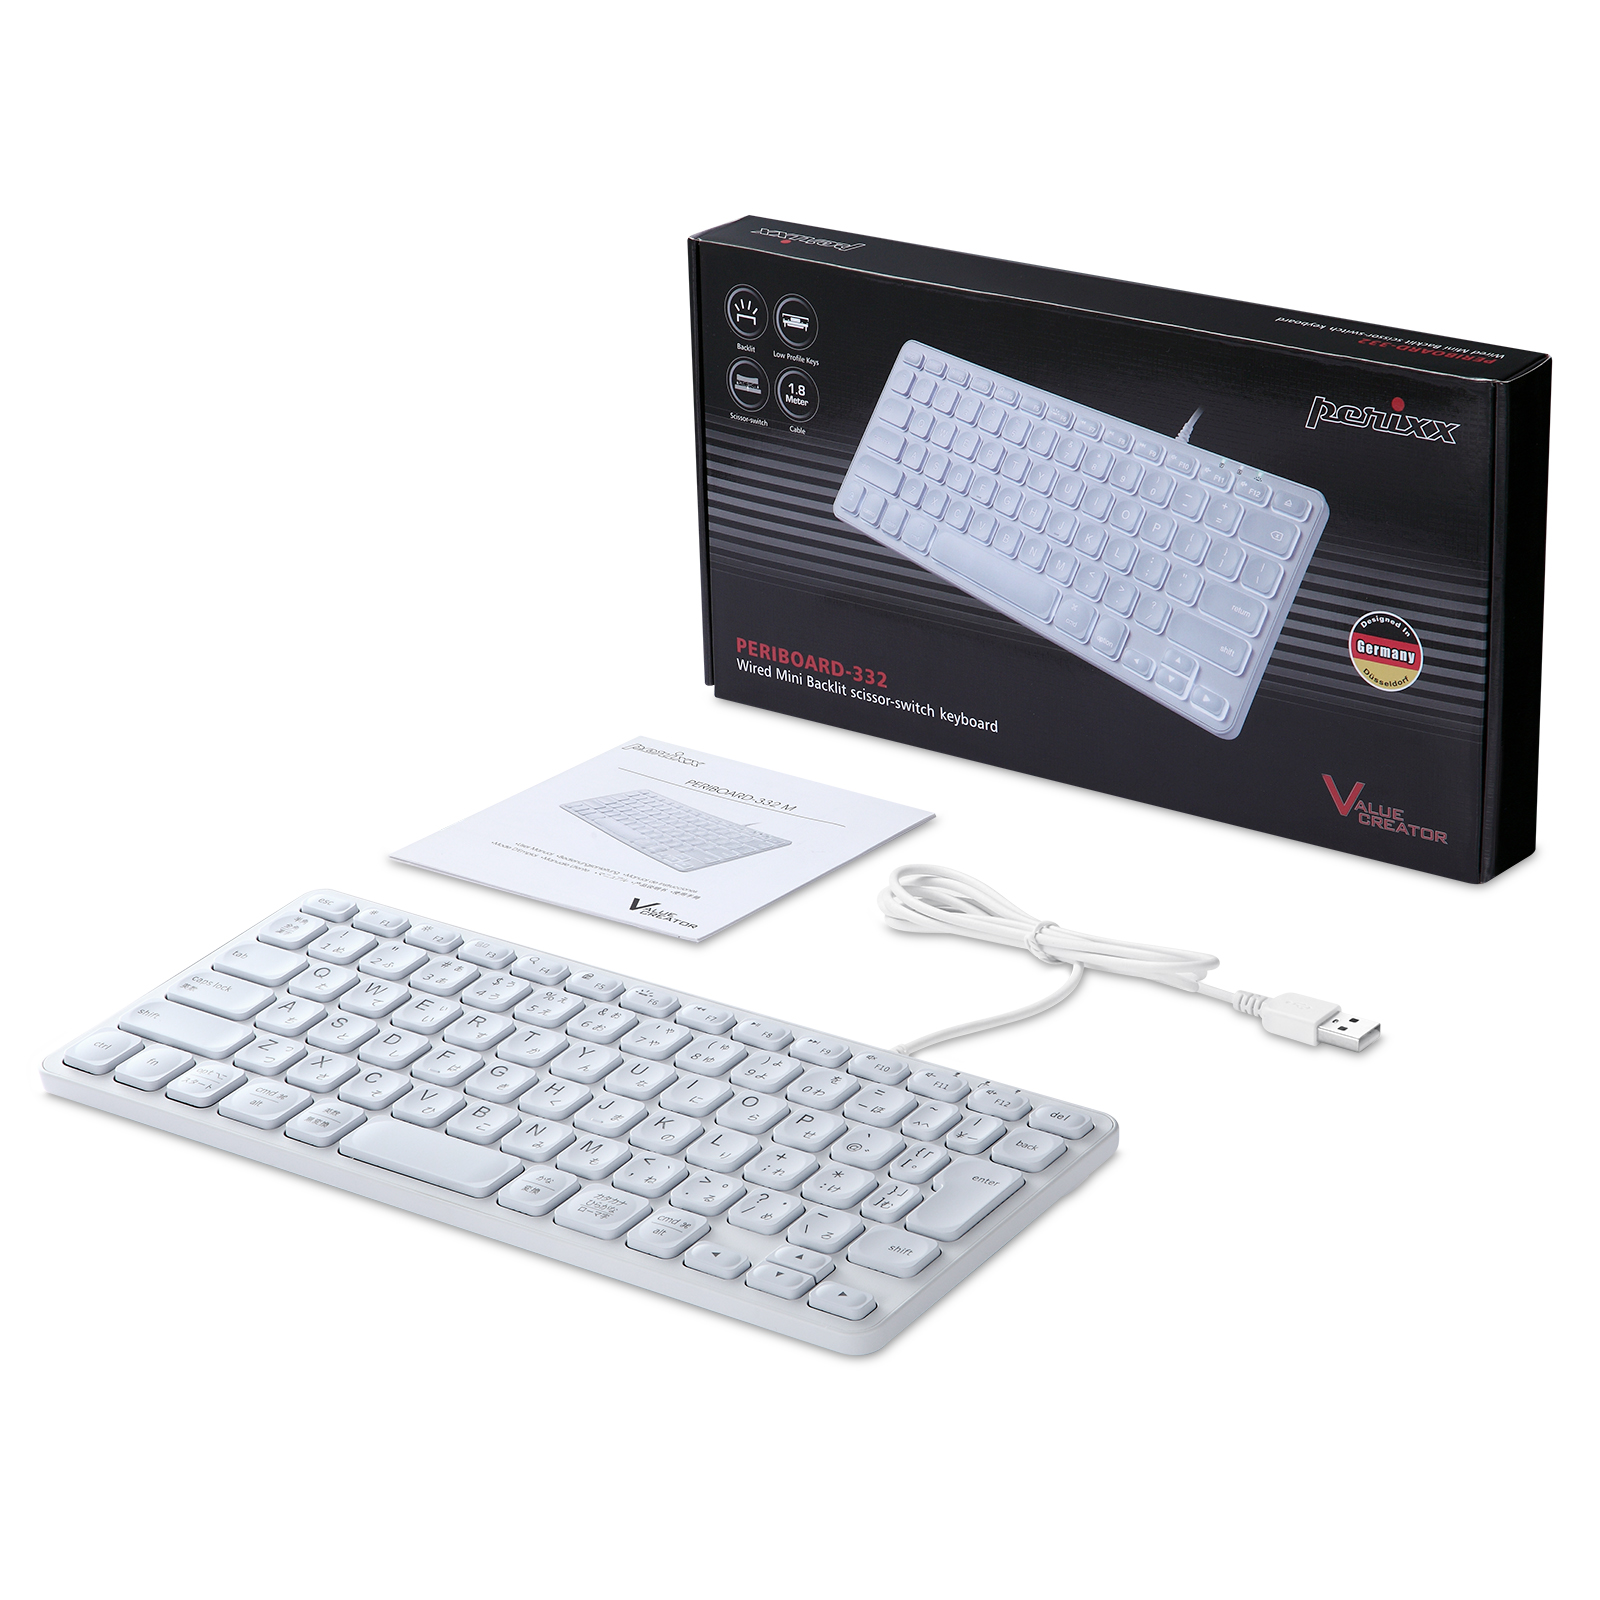 バックライト機能が搭載されたキーボード「Periboard-332」が発売